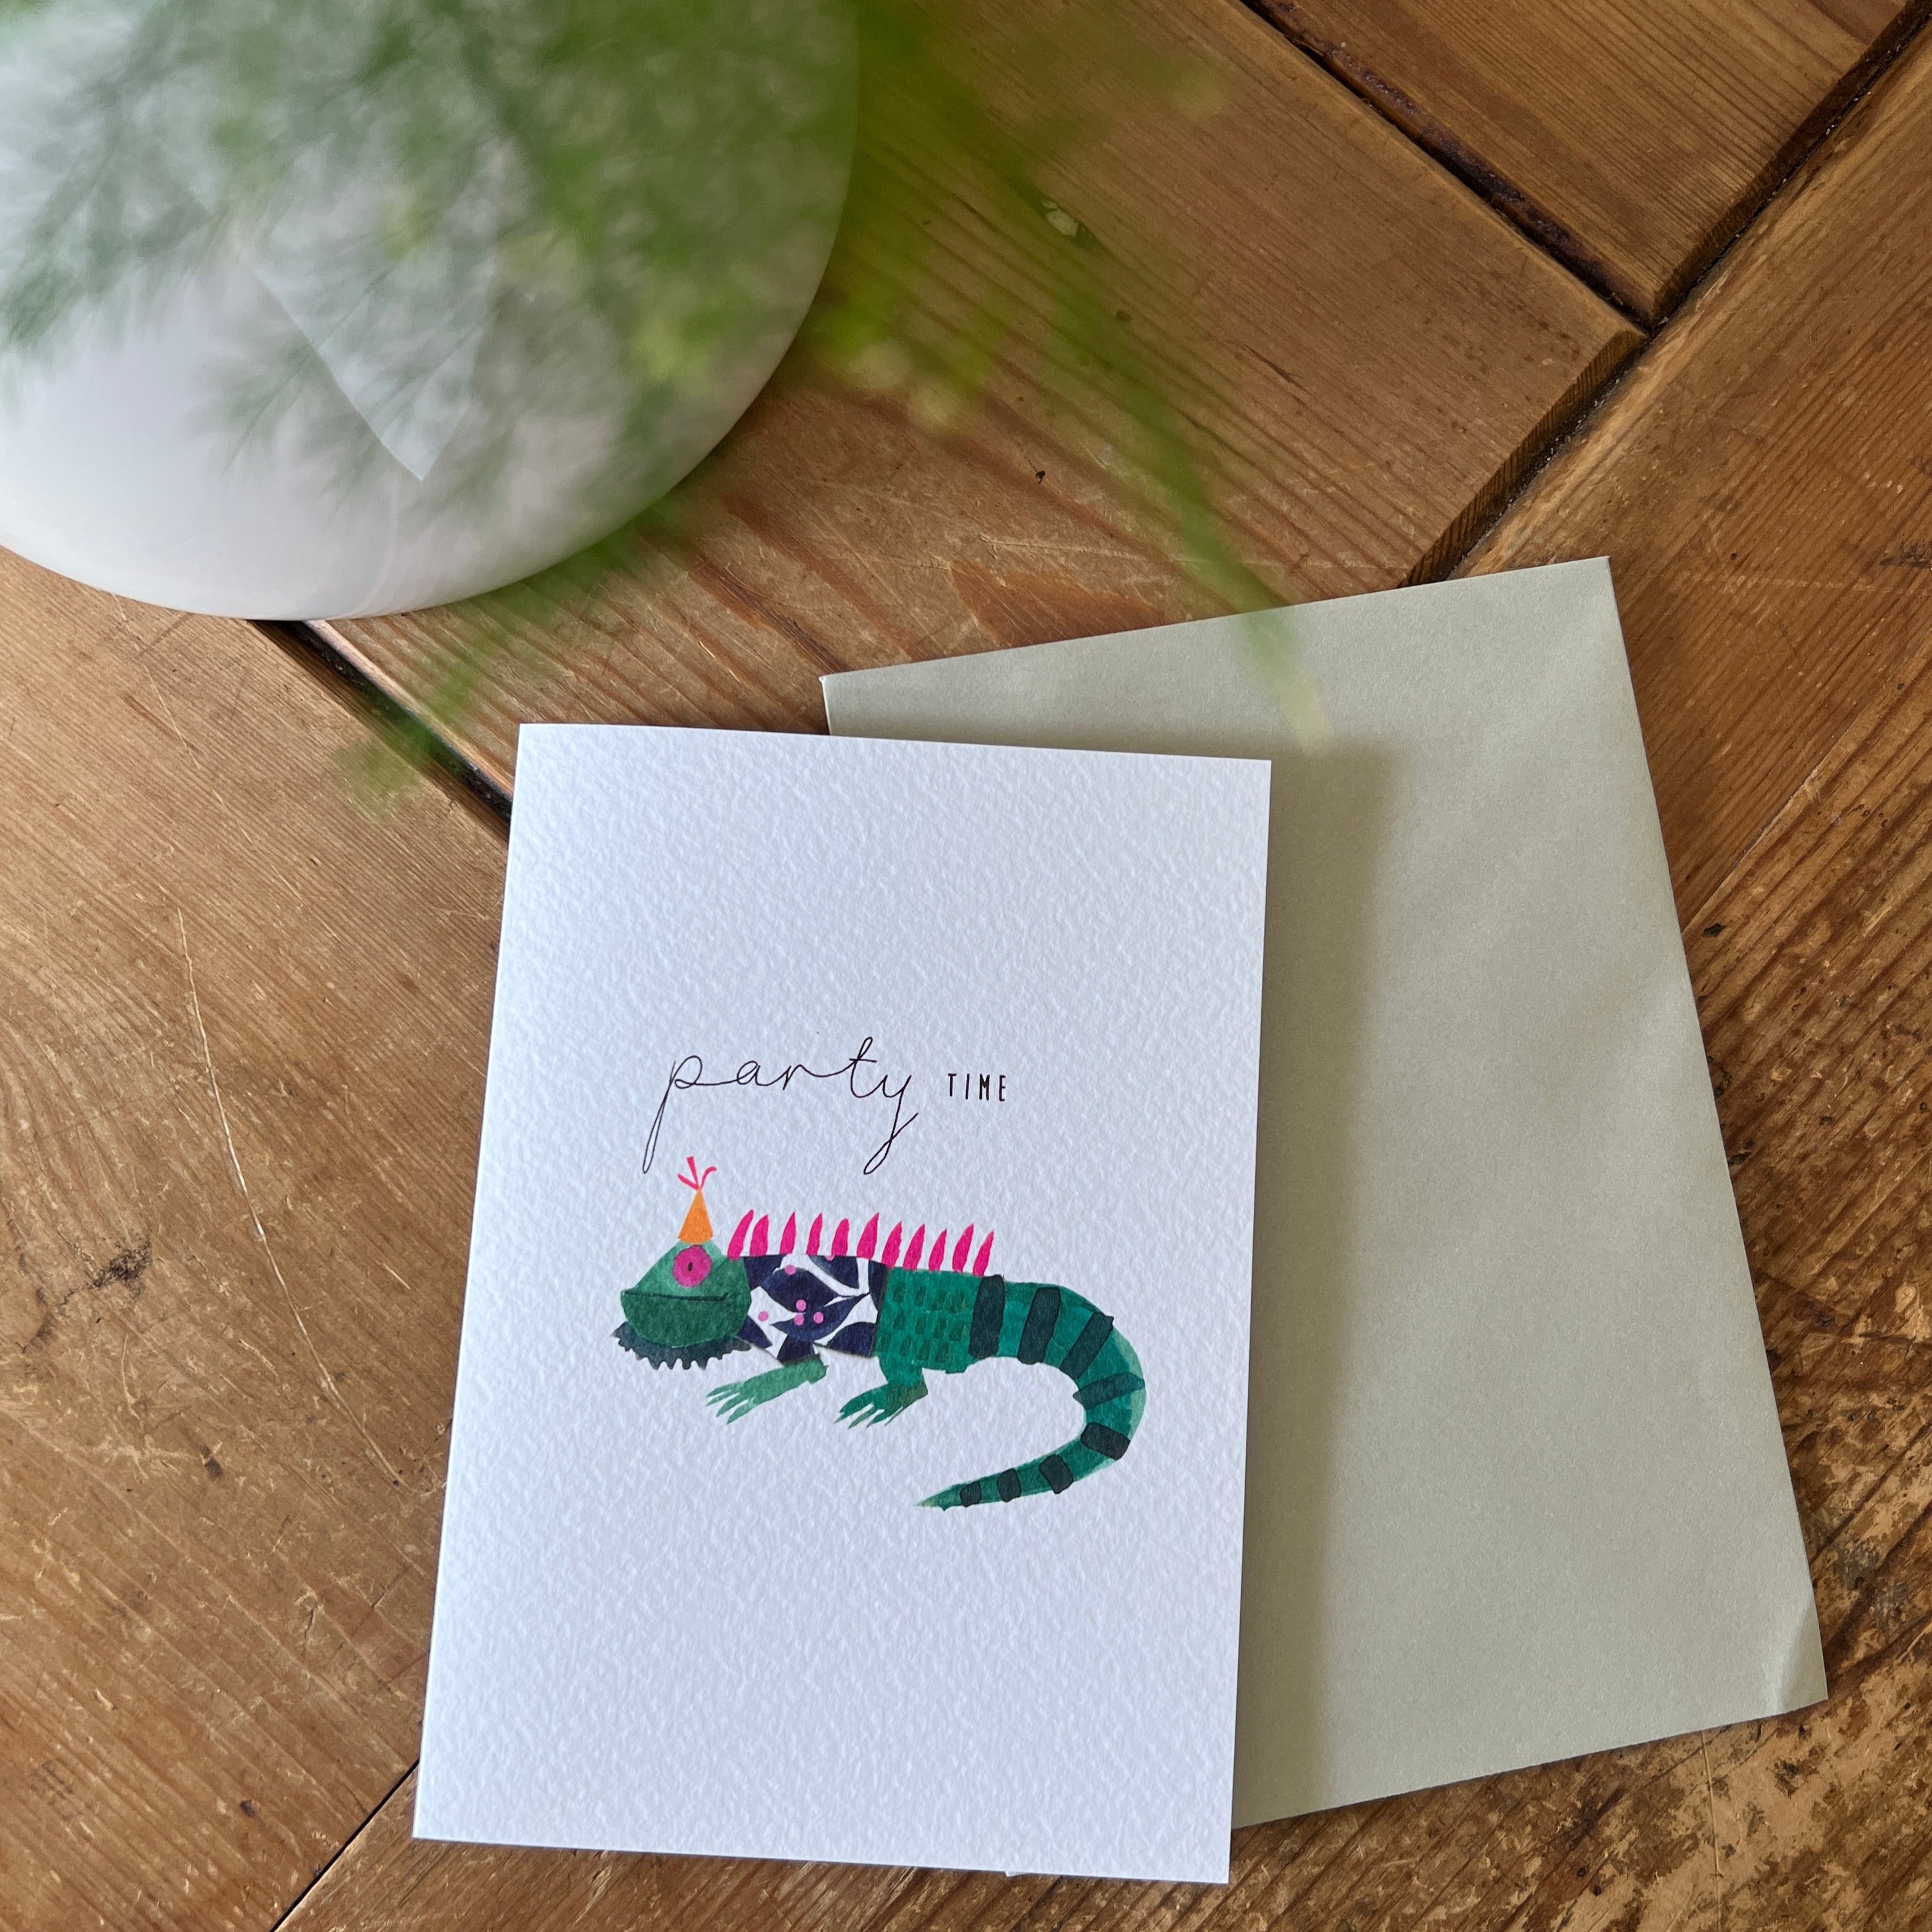 Chameleon Card